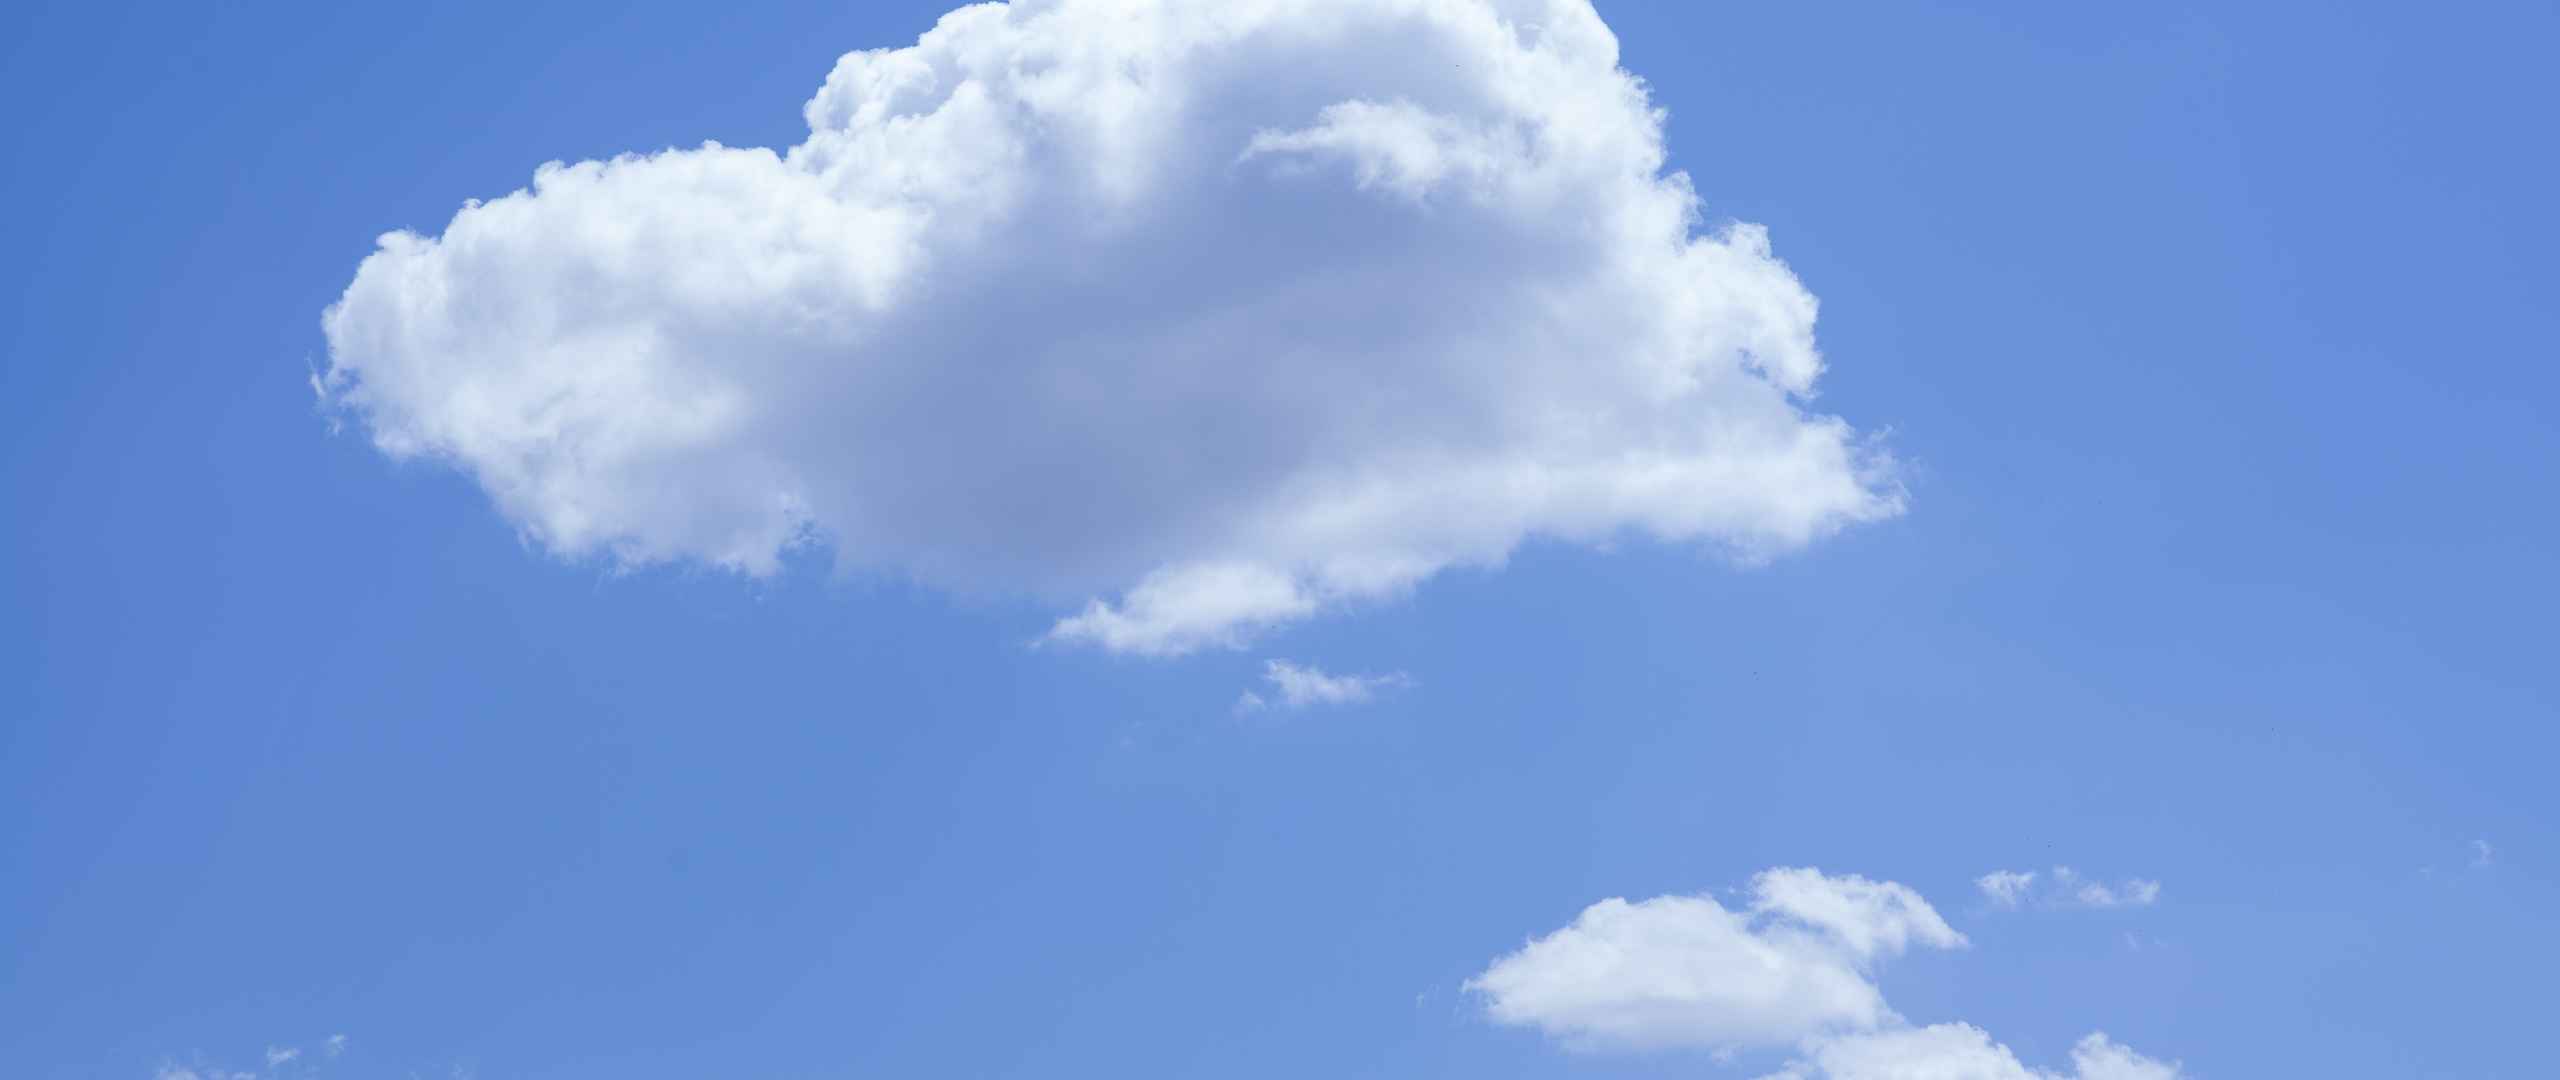 蓝色天空心形云朵壁纸